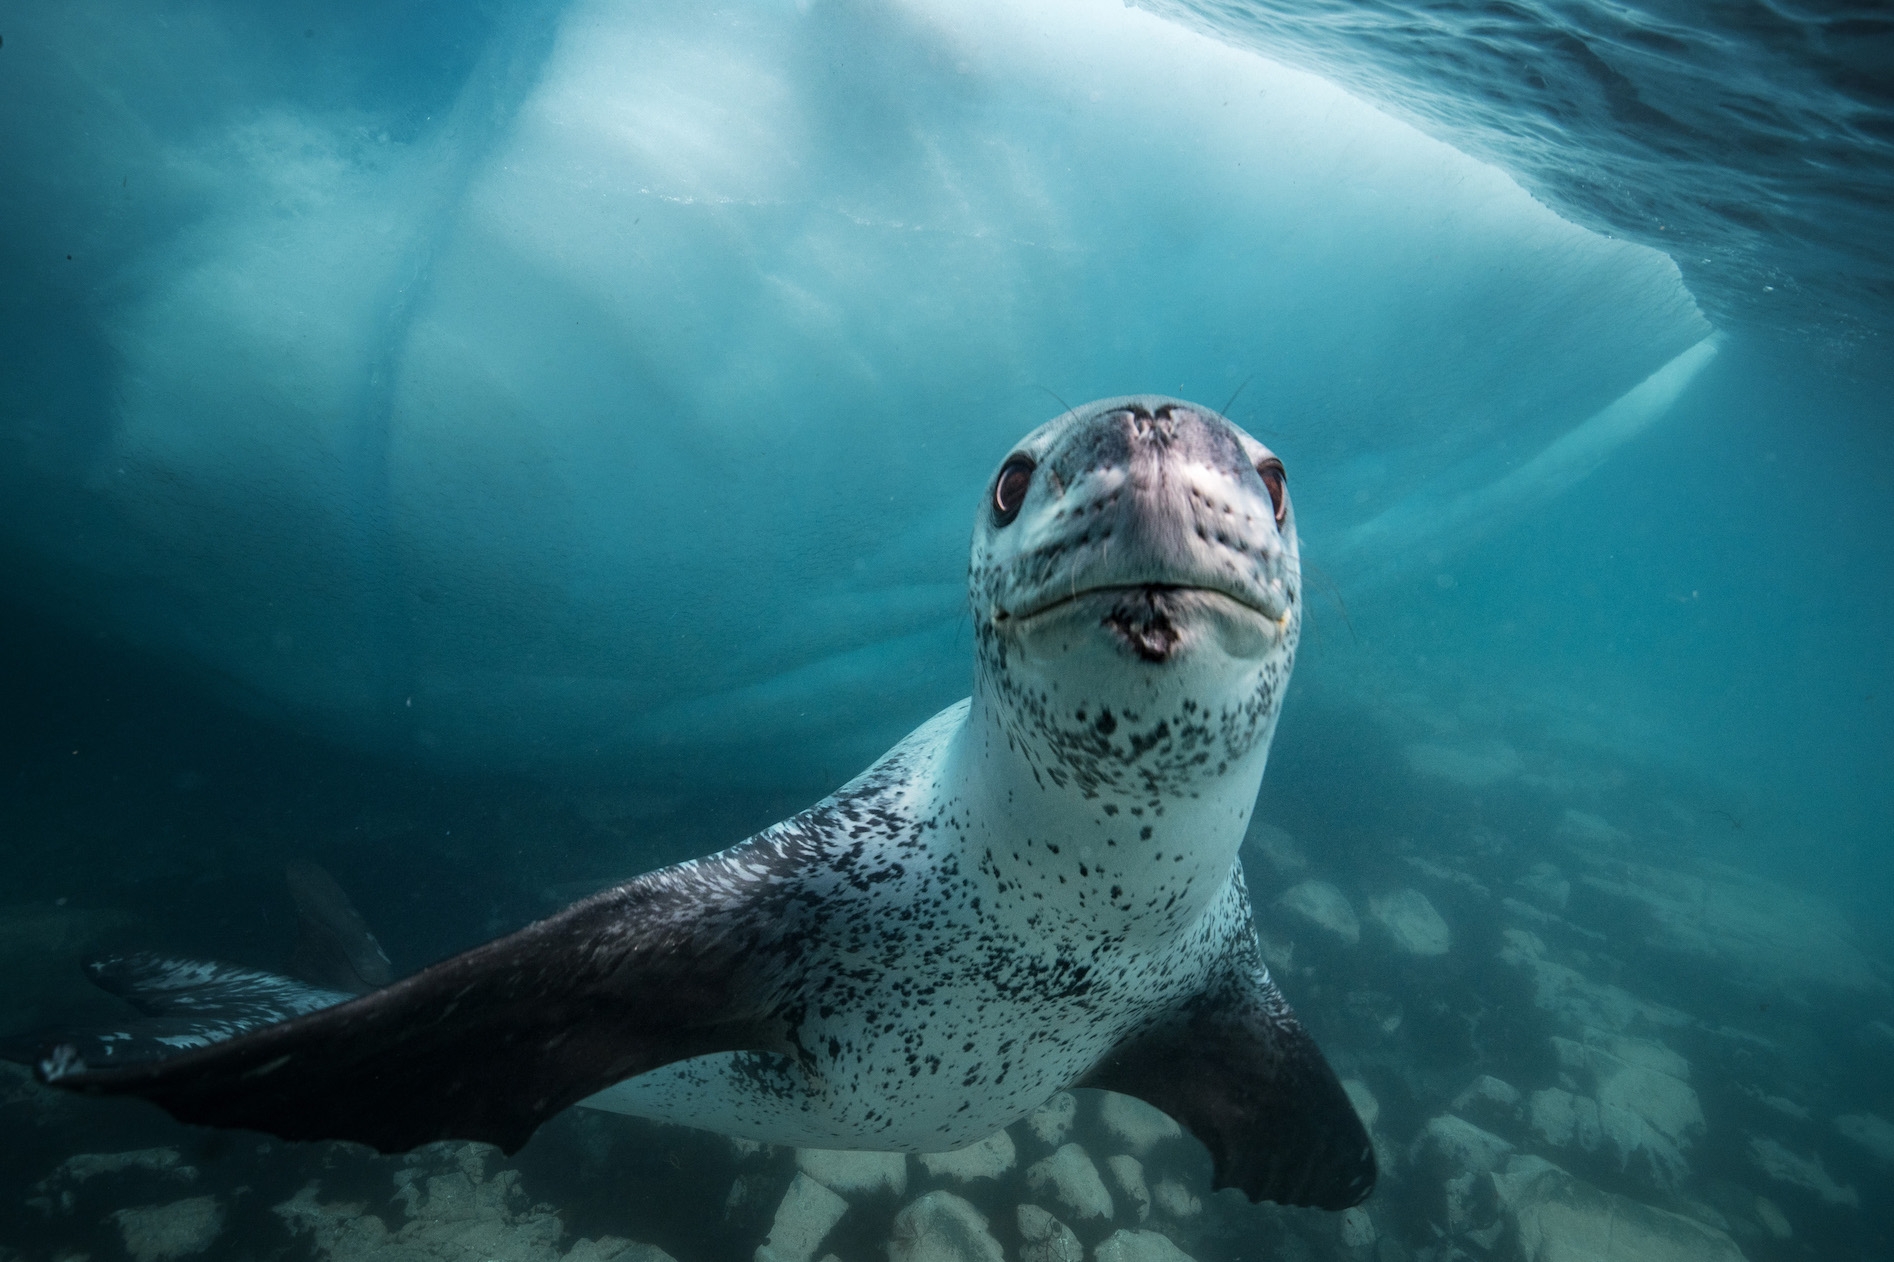 2014 年,克莉絲汀娜 · 米特麥爾與保羅 · 尼克蘭和安迪 · 曼共同創立 SeaLegacy。他們攜手完成超過 45 次探險,其中更在南極洲發現豹海豹。科學考察證明豹海豹正遷入南極洲的海狗區域,大大降低海狗的族群數目。